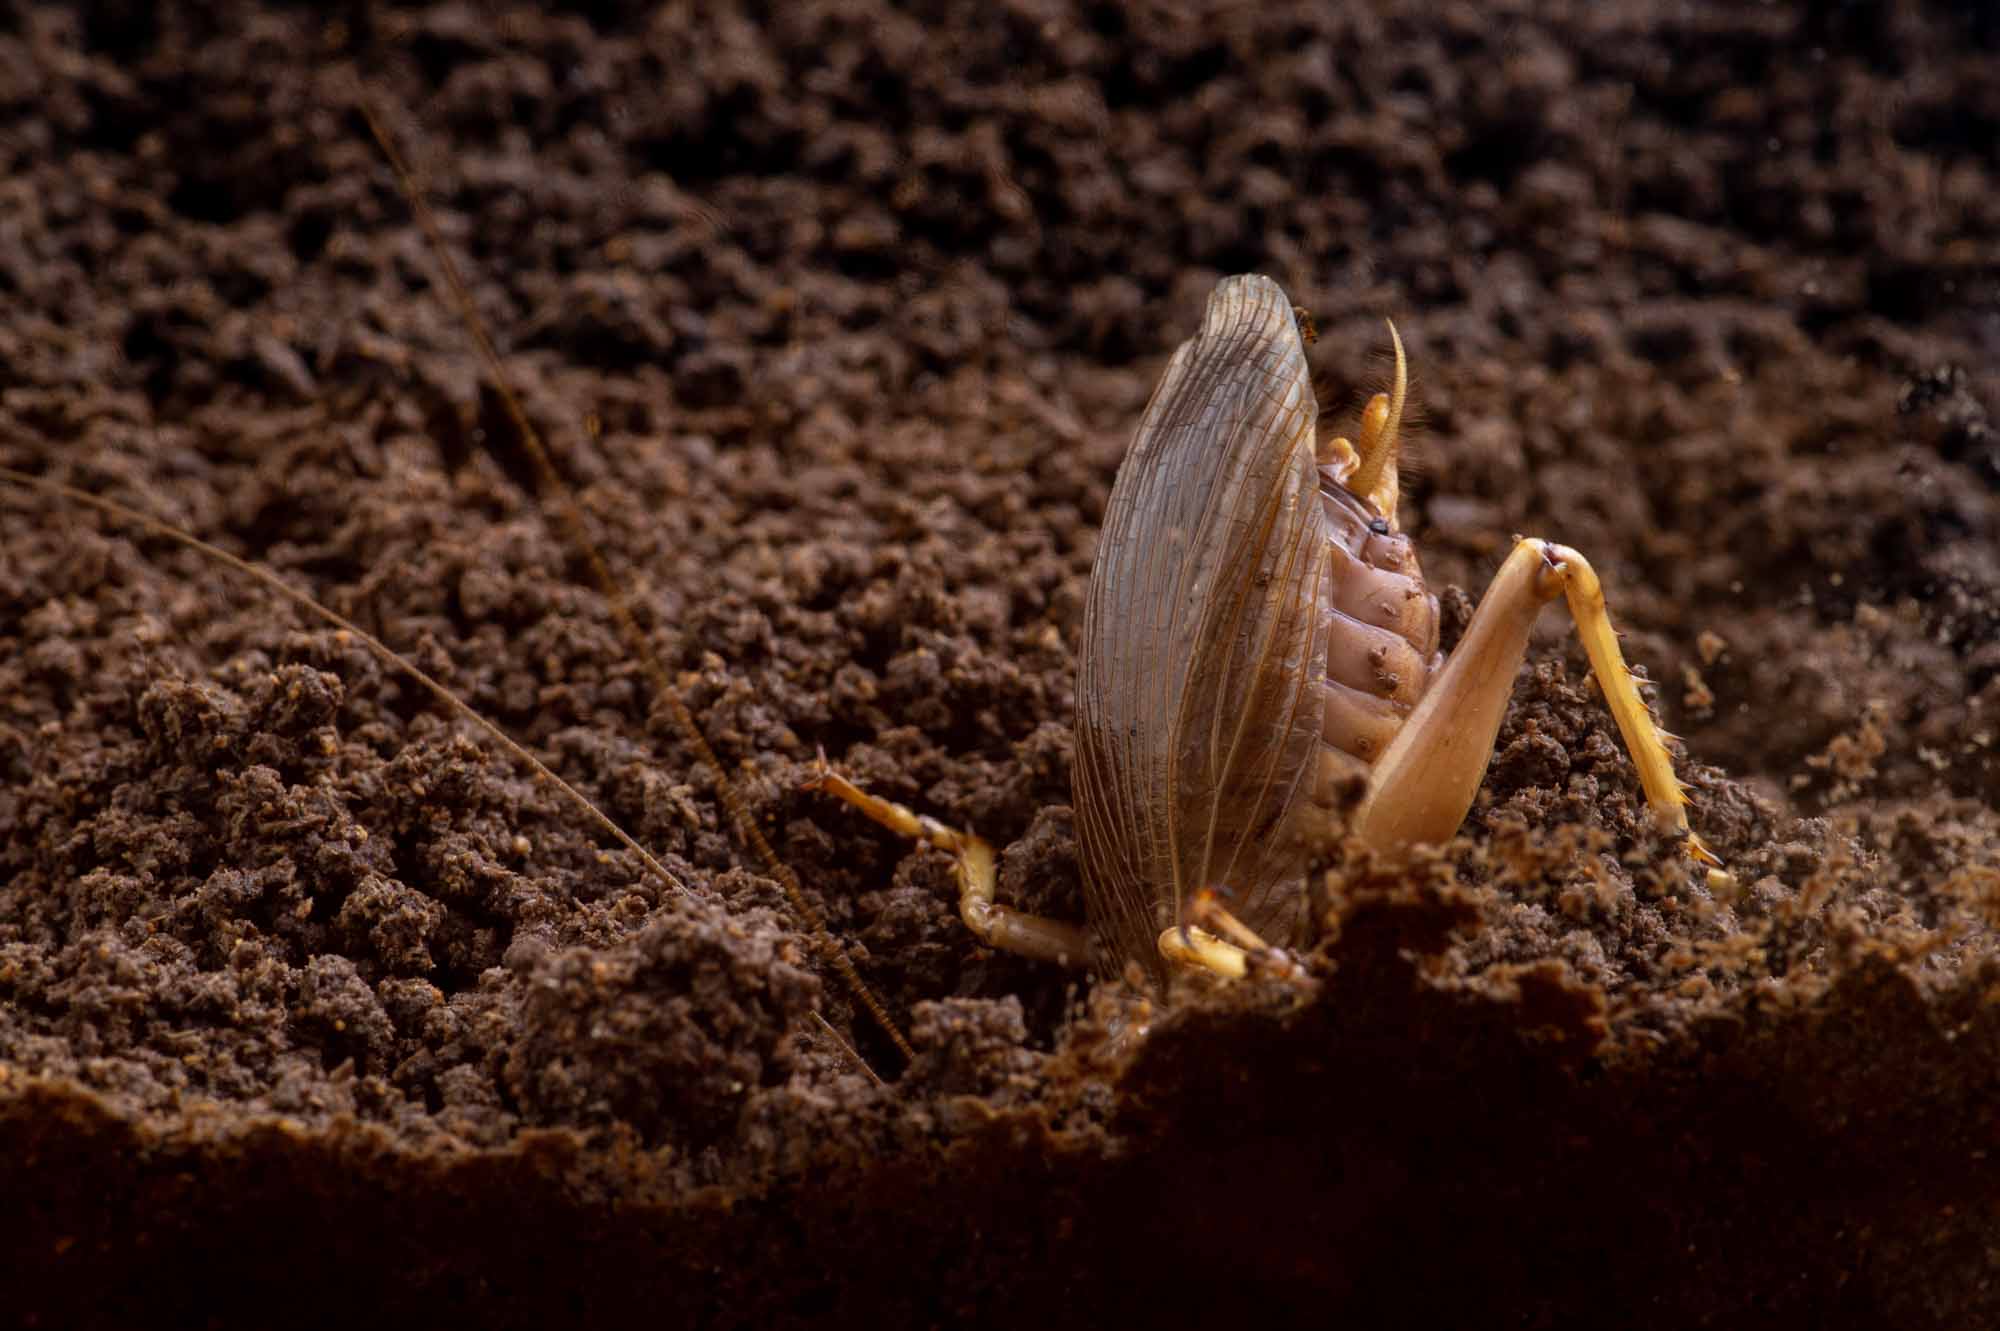 リオック（オバケコロギス） | 虫の写真と生態なら昆虫写真図鑑「ムシミル」